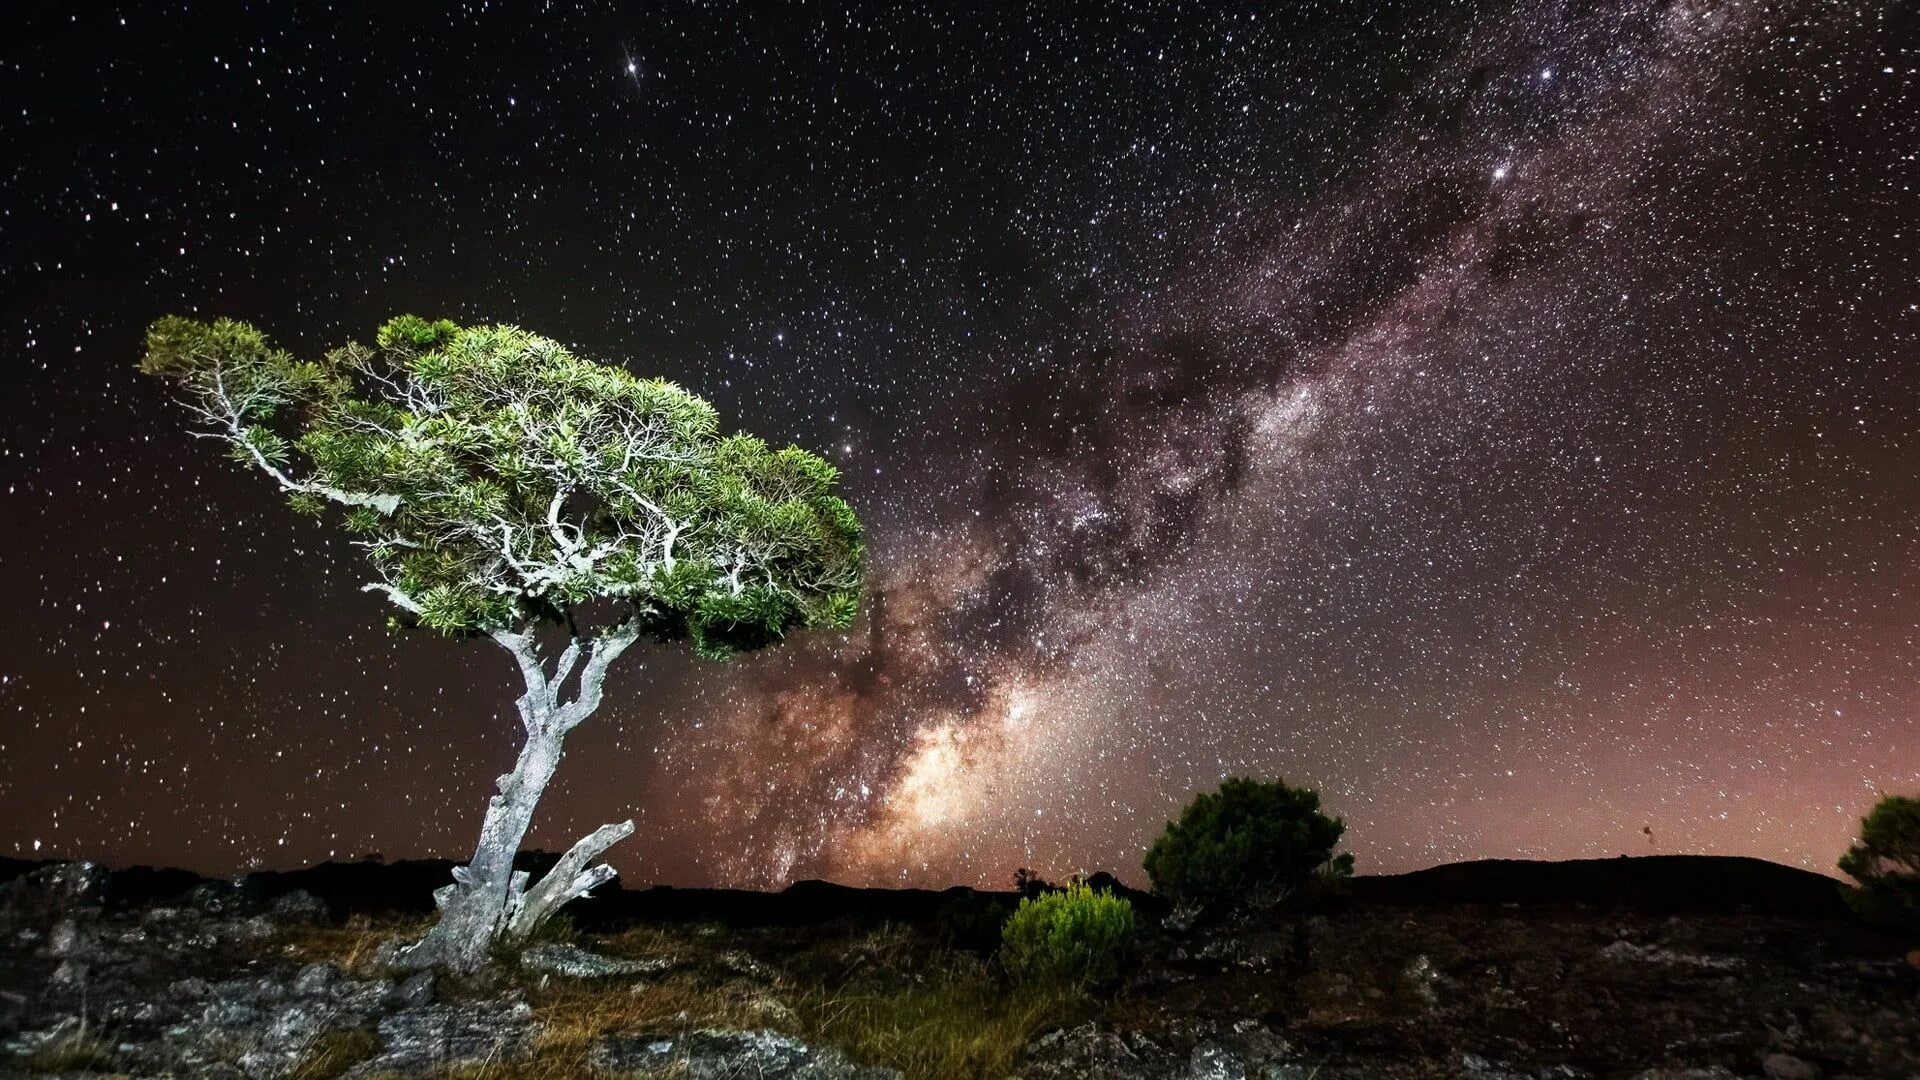 Сосна Milky way. Природа космос. Дерево в космосе. Звездное дерево. Tree star